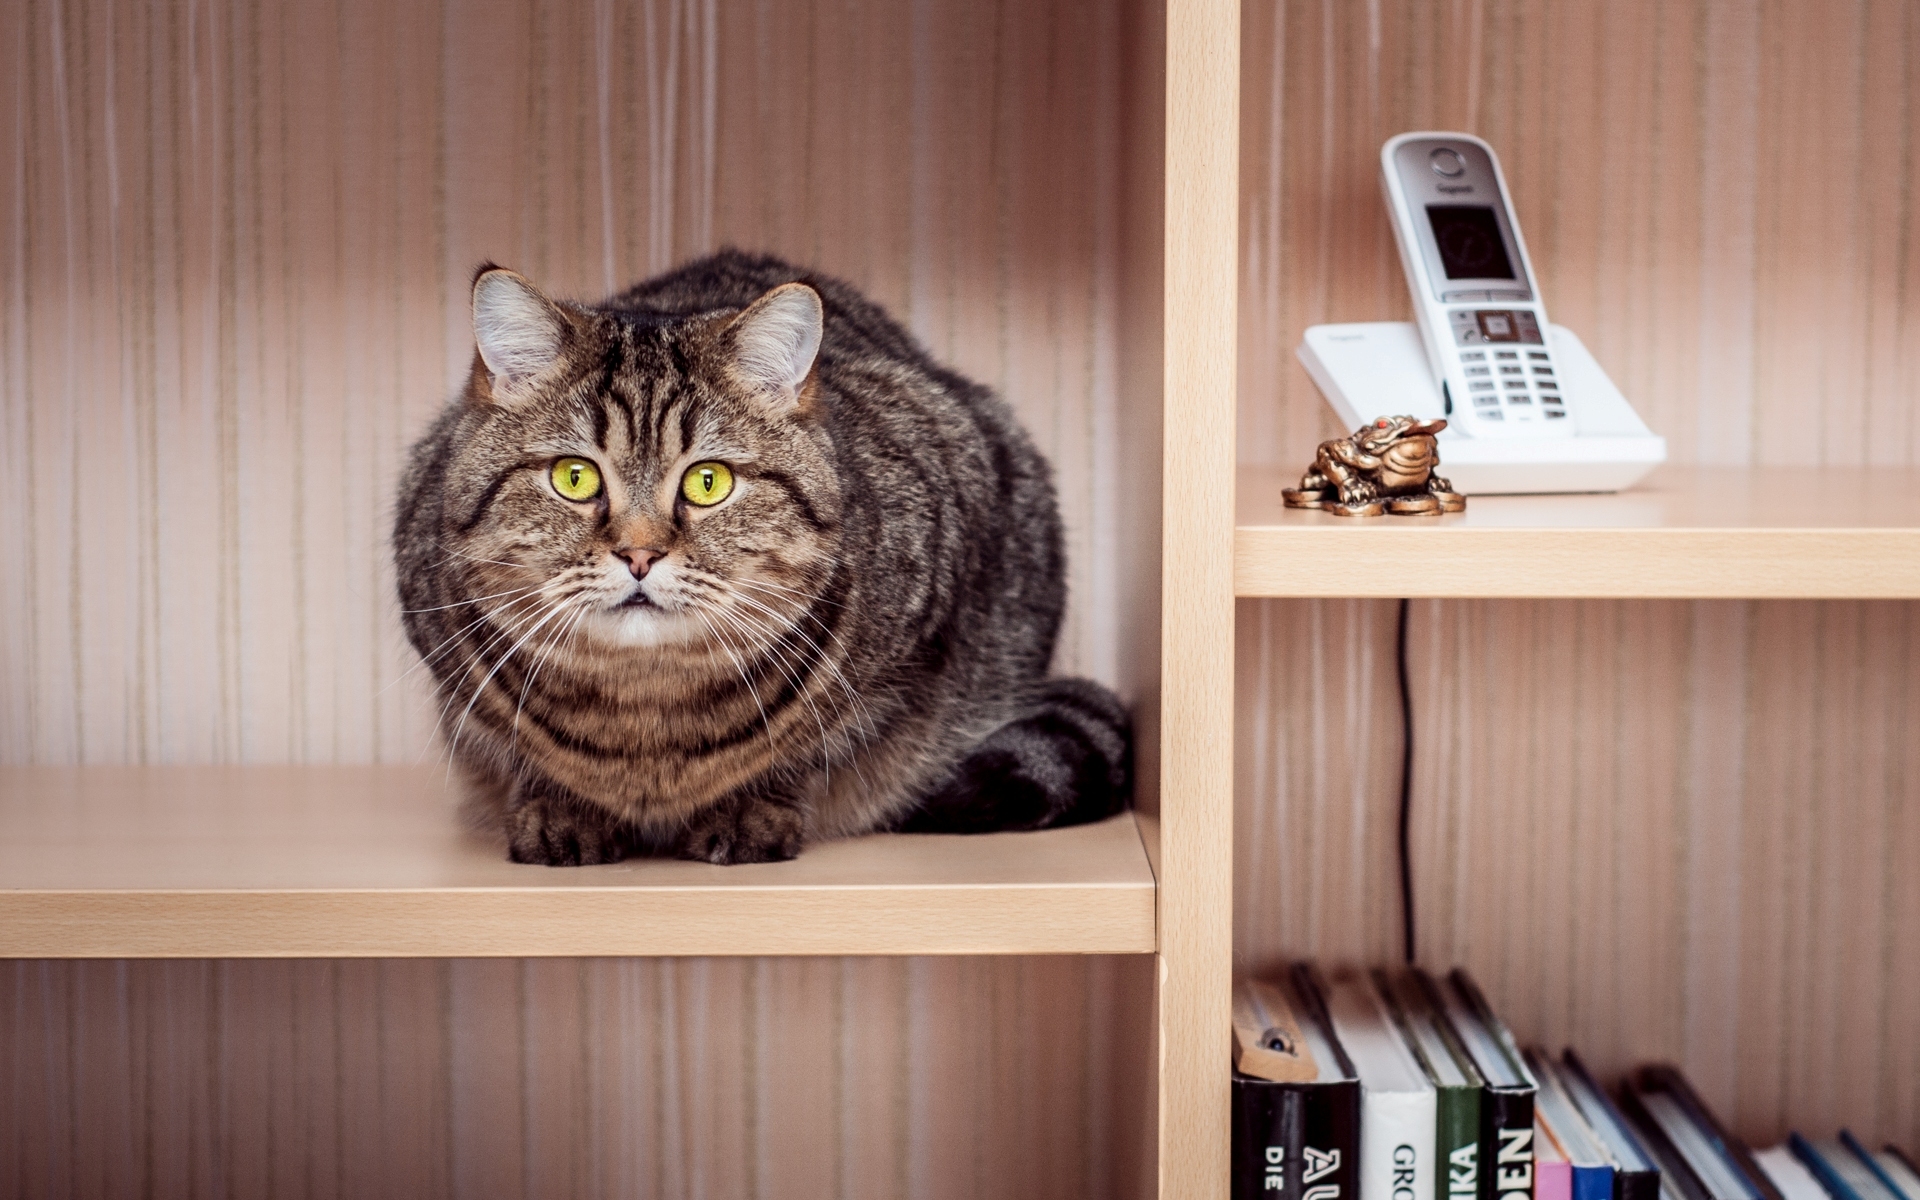 cat, Tabby, Sitting, Wardrobe, Shelves, Phone, Books Wallpaper